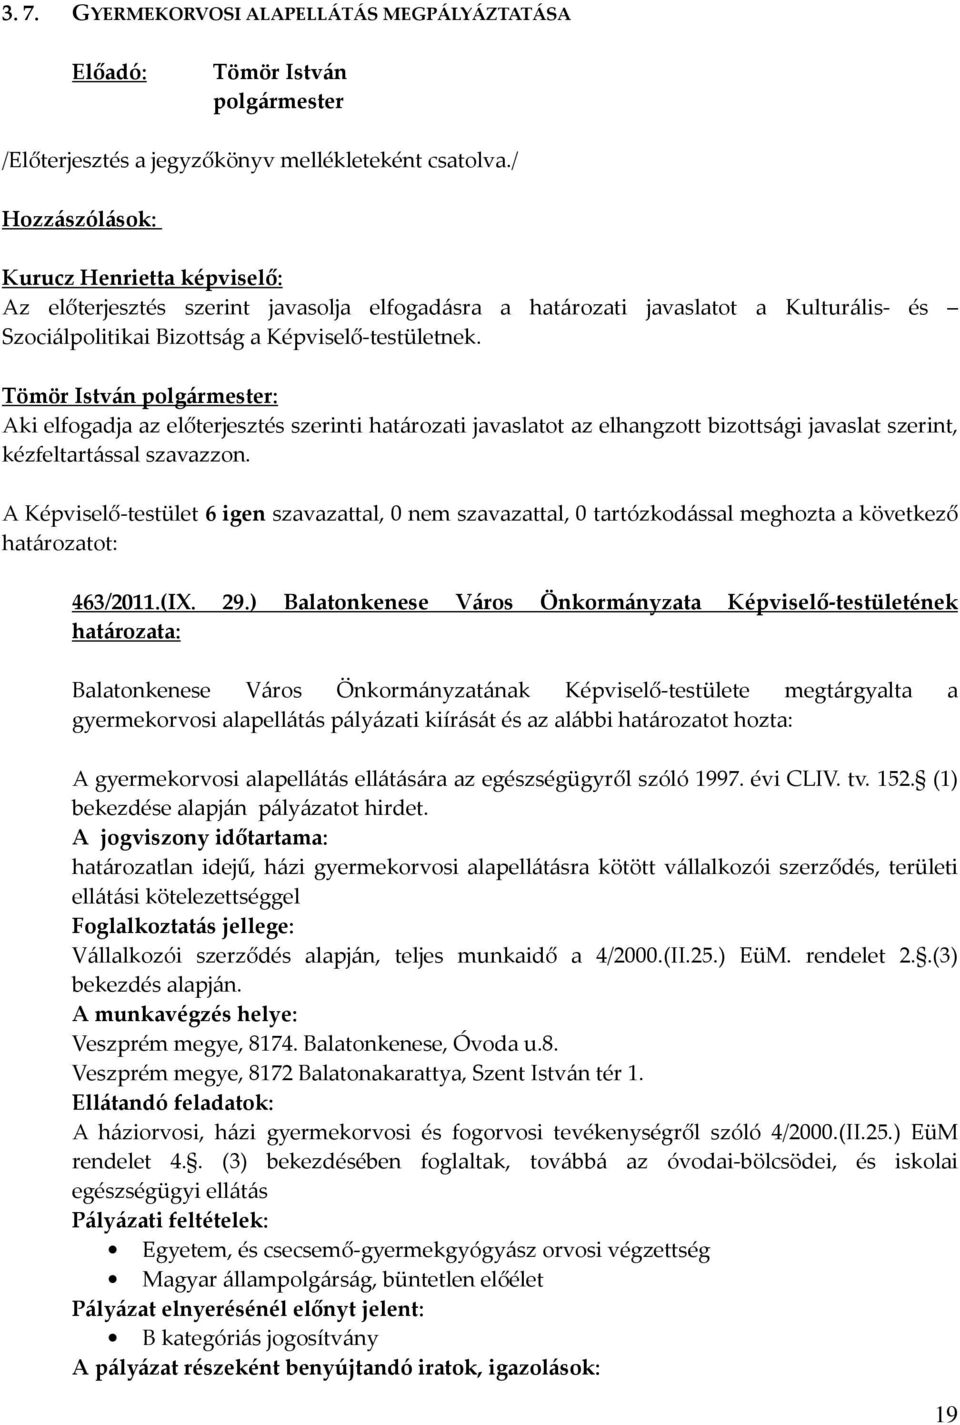 ) Balatonkenese Város Önkormányzata Képviselő-testületének Balatonkenese Város Önkormányzatának Képviselő-testülete megtárgyalta a gyermekorvosi alapellátás pályázati kiírását és az alábbi